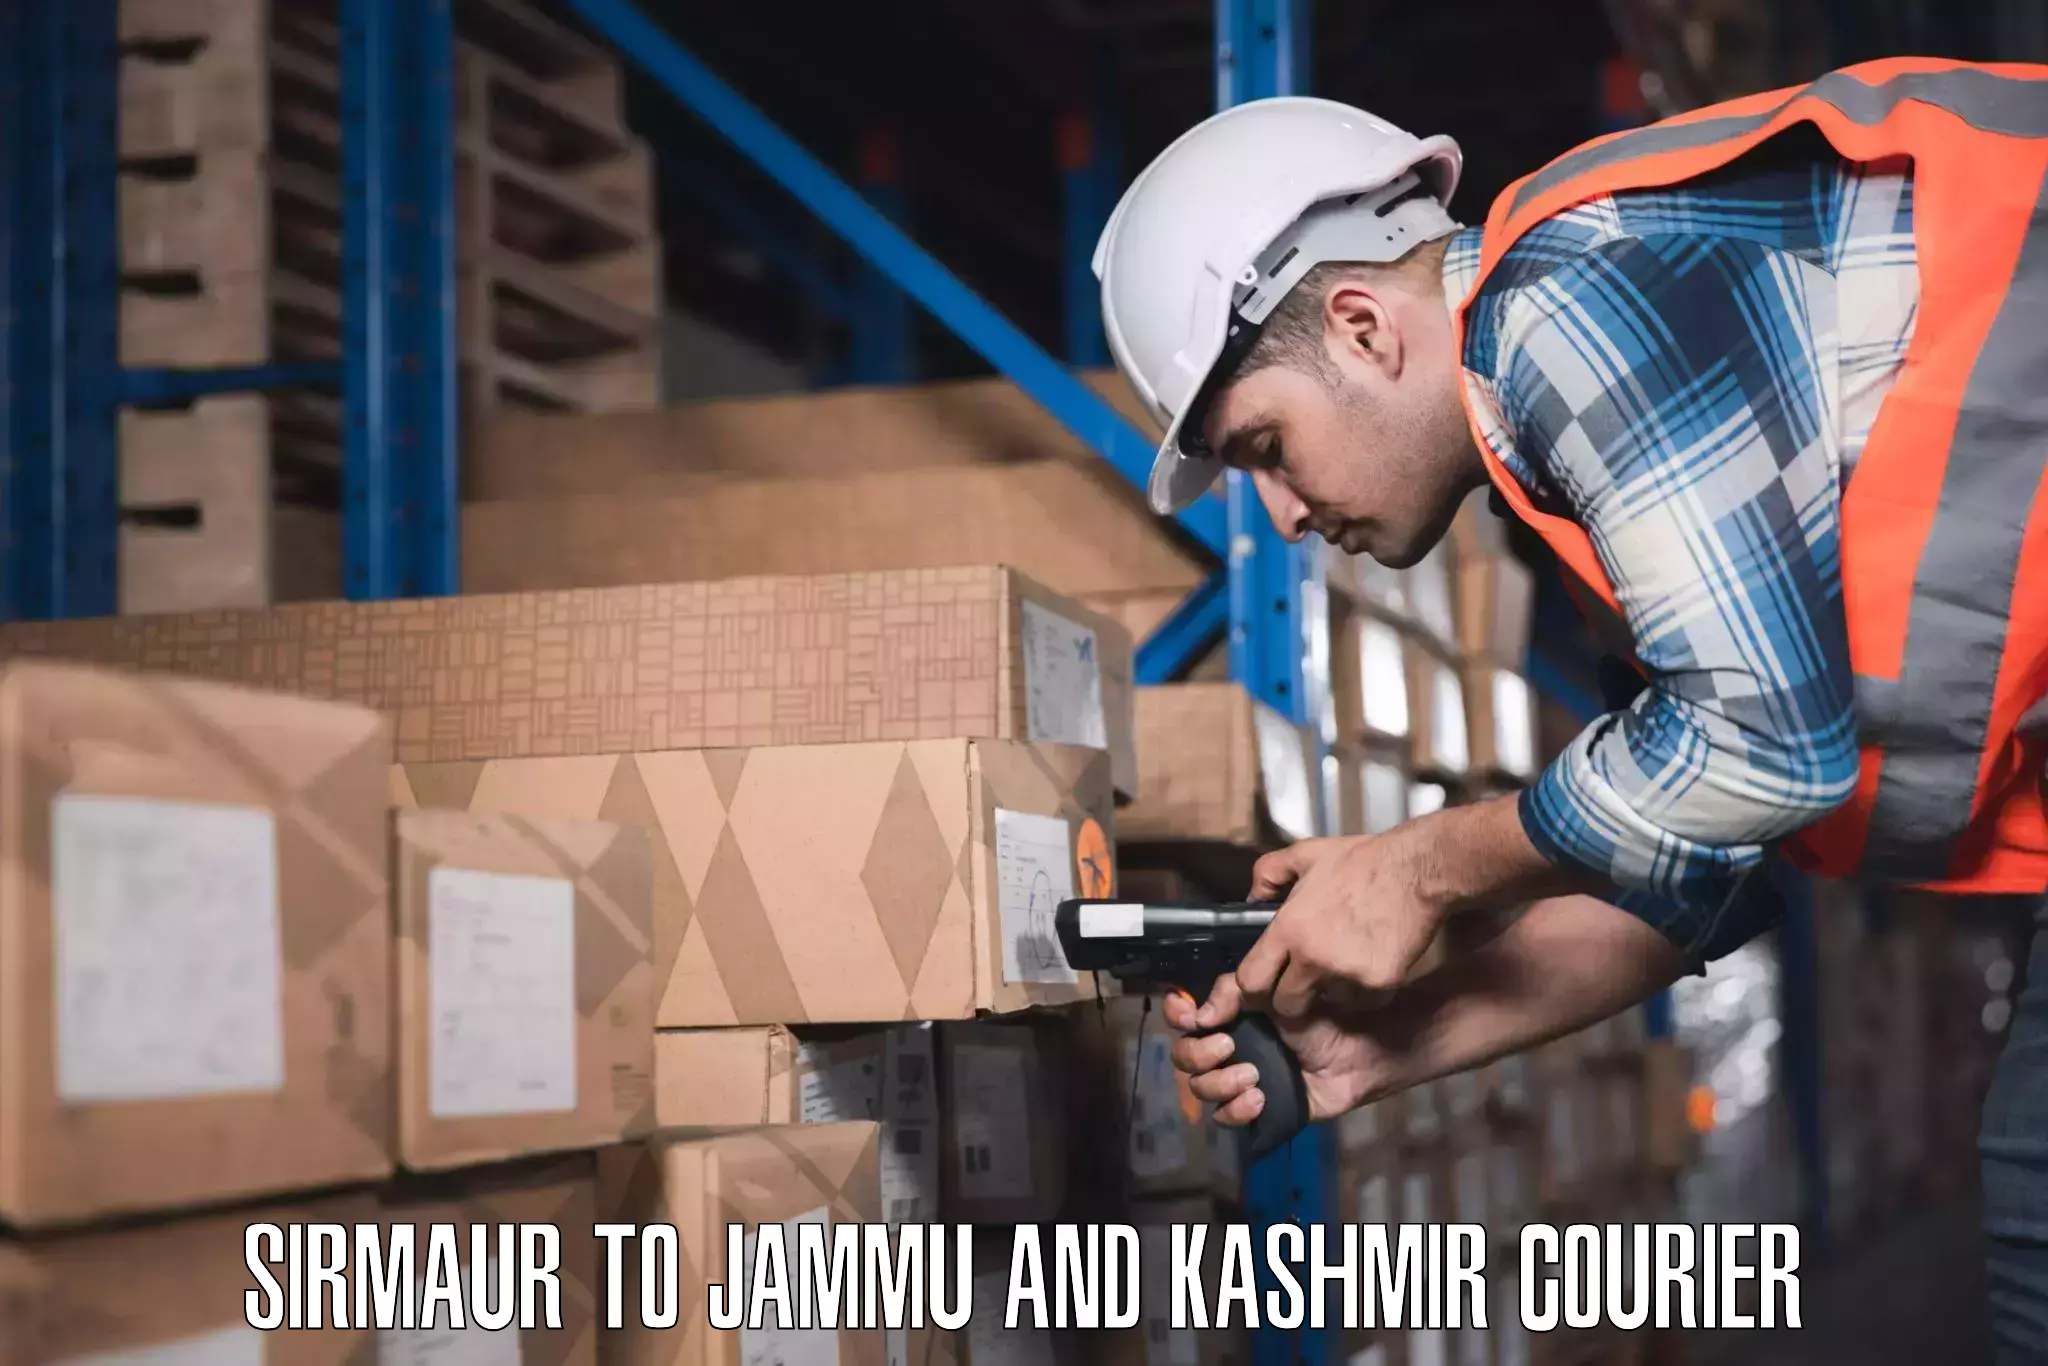 Baggage transport scheduler Sirmaur to Jammu and Kashmir